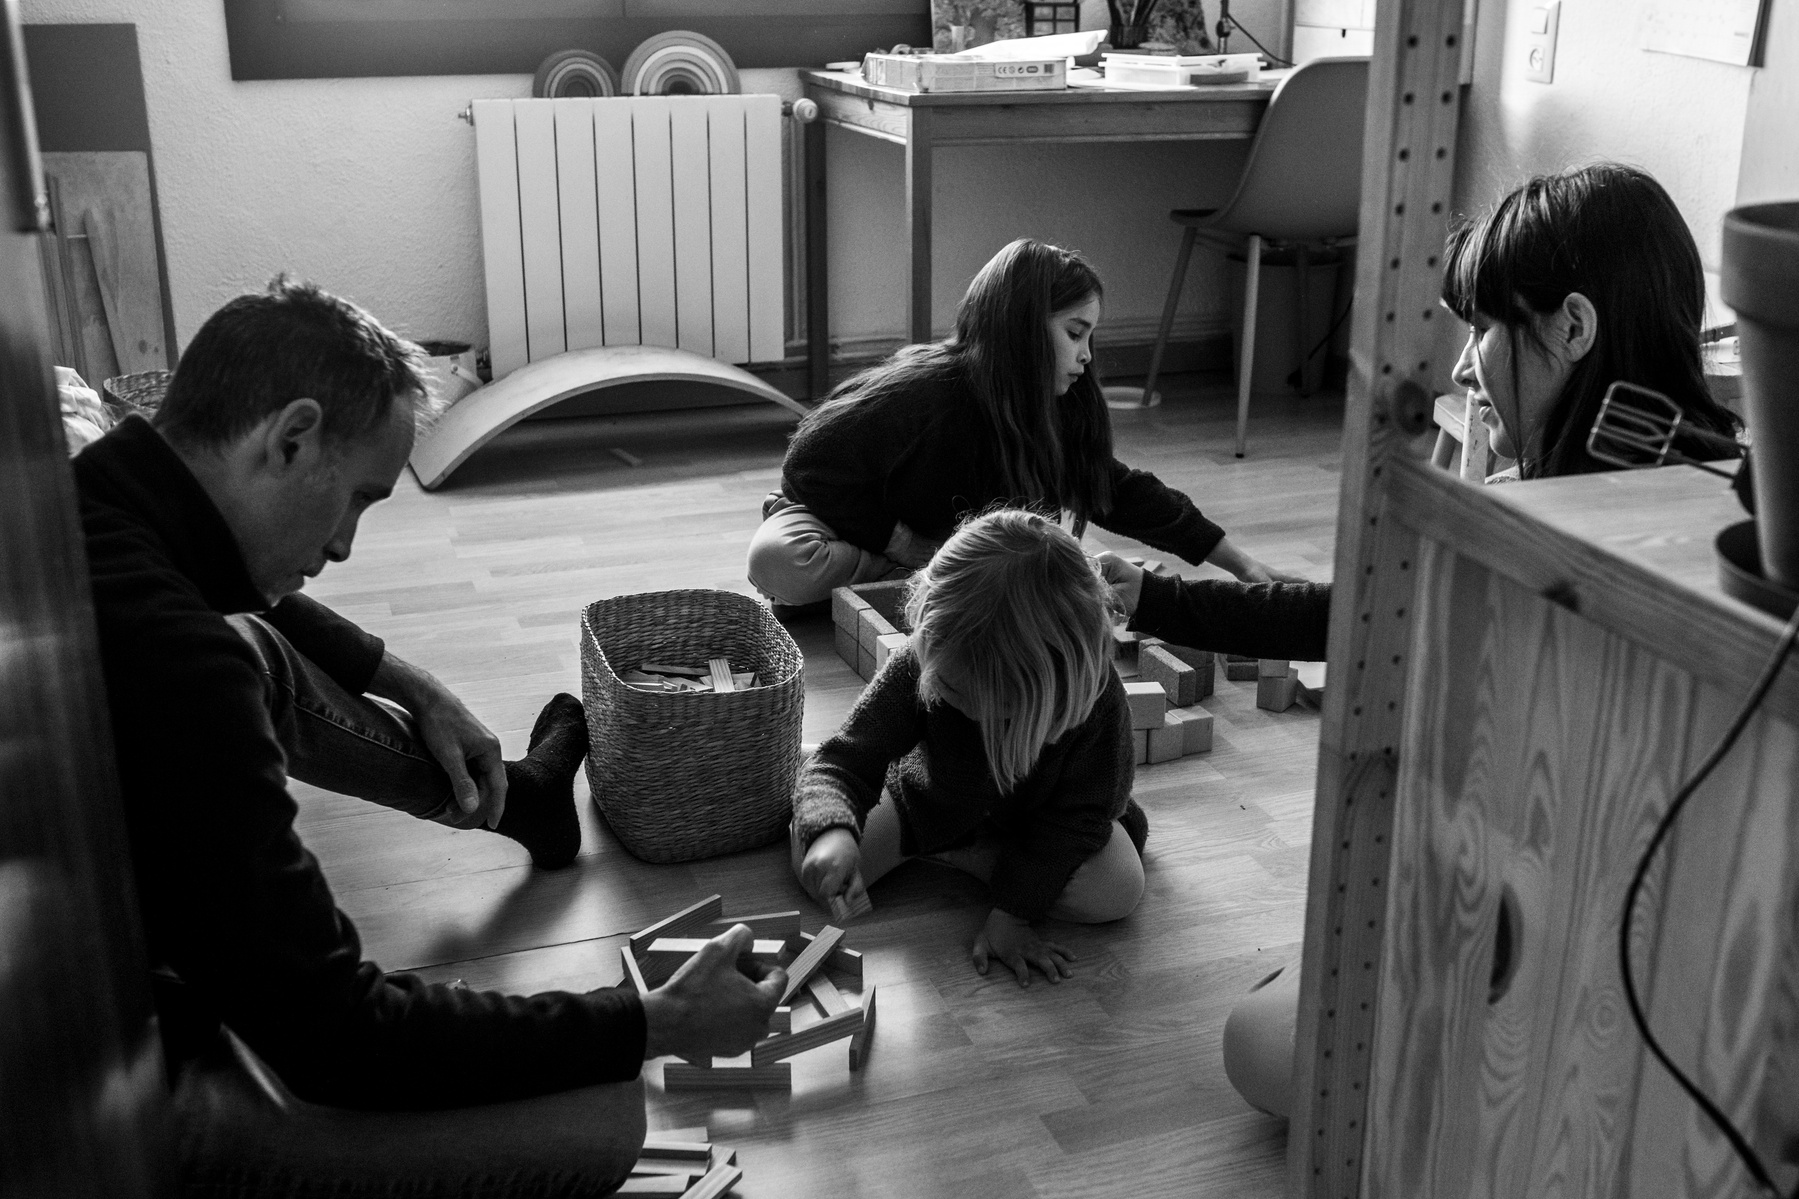 Familia jugando juntos en la habitación, fotografia documental de familia 
Manuela Franjou family photography